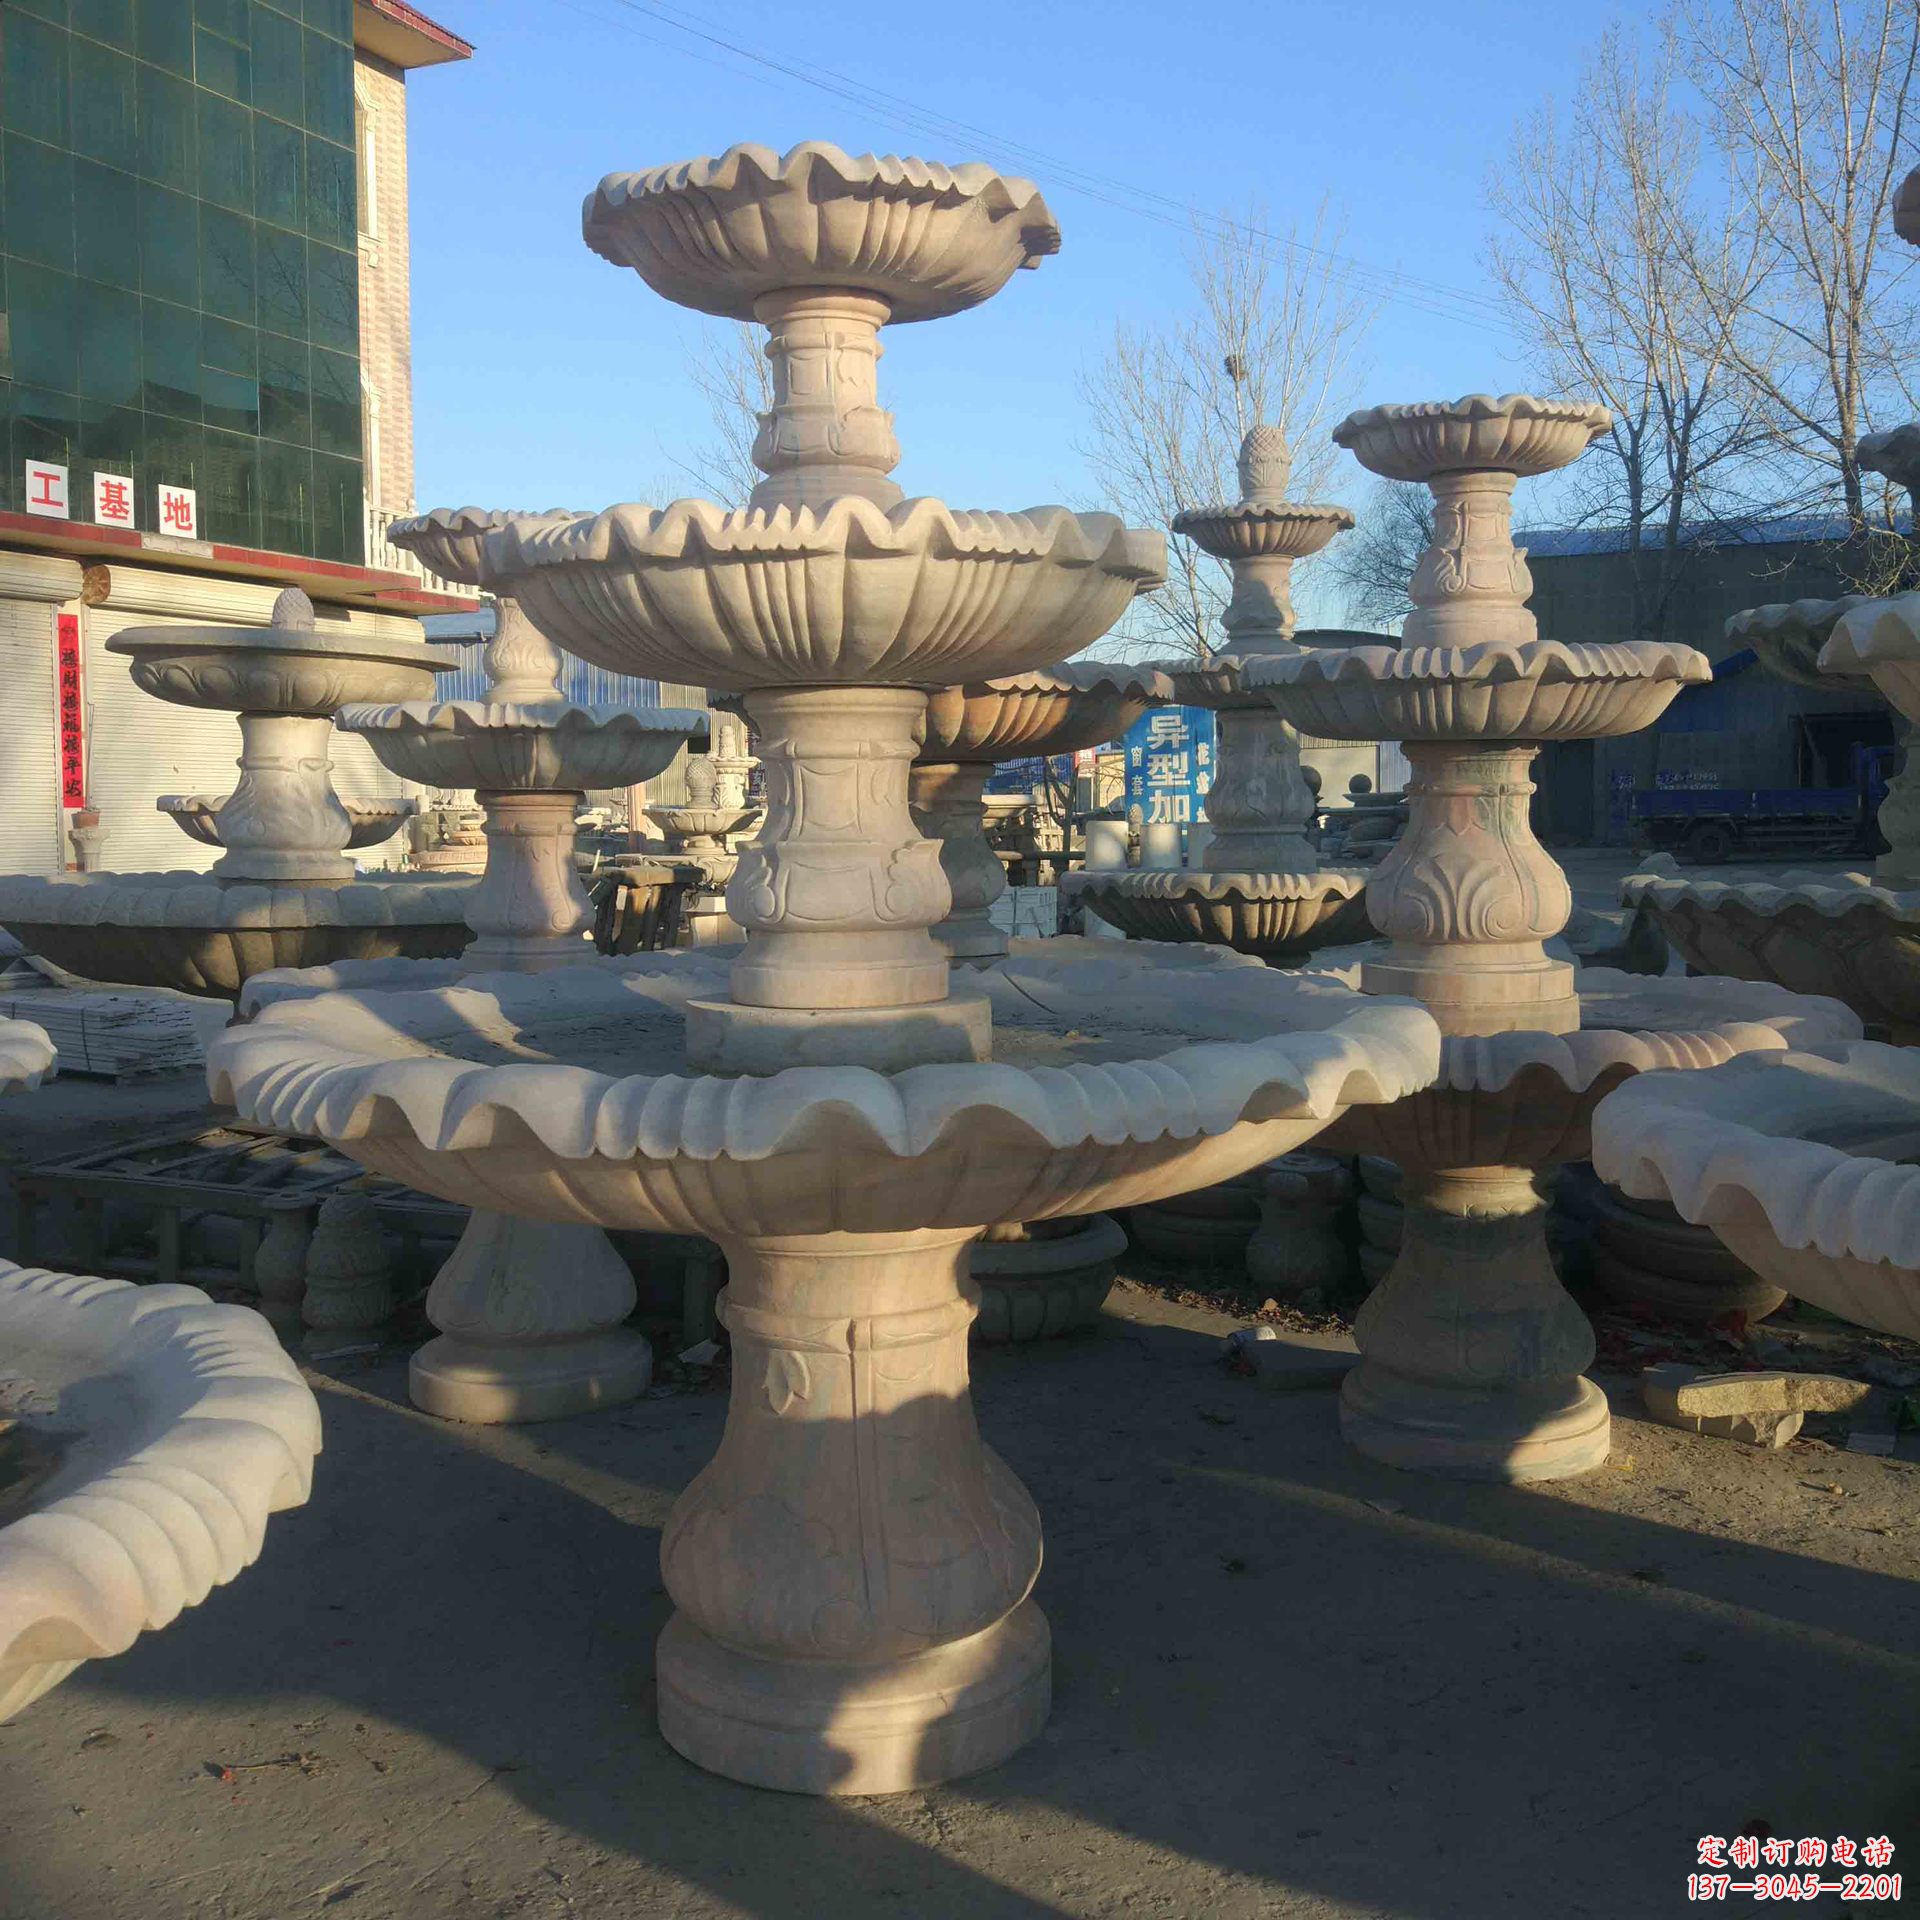 甘肃城市增添魅力的石雕天鹅